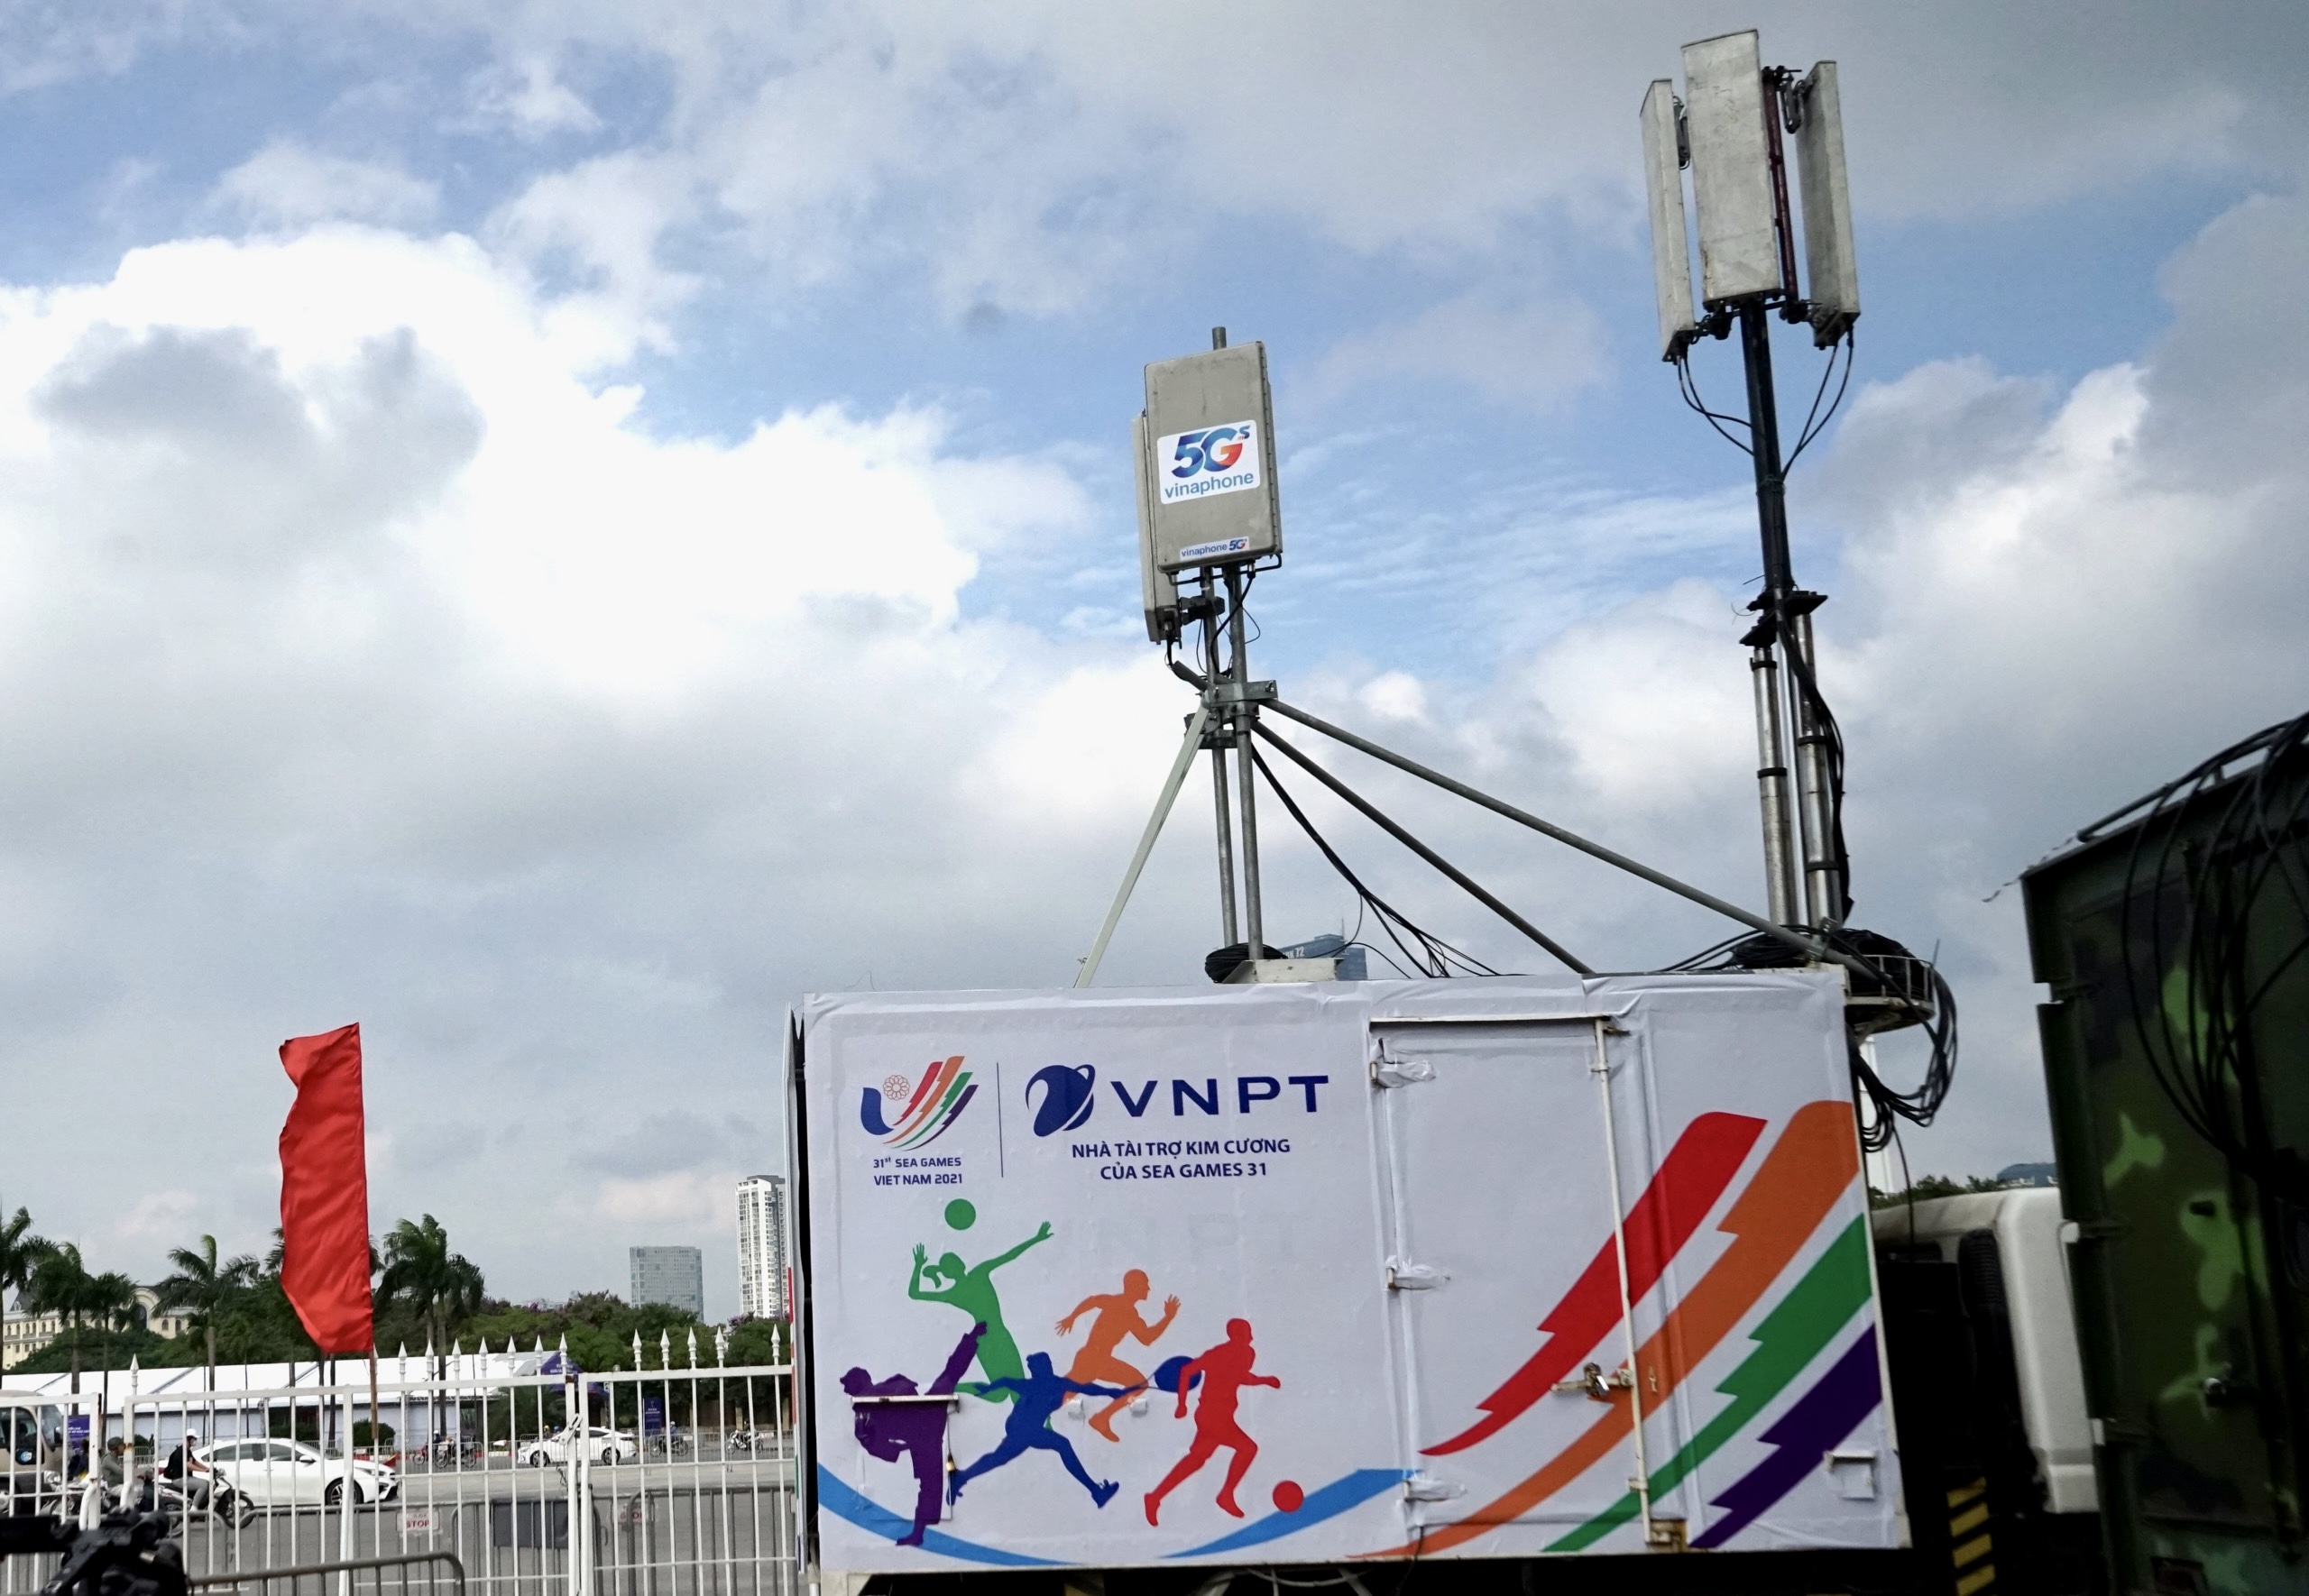 5G VinaPhone tại trận chung kết bóng đá nam Sea Games 31 có tốc độ tới 1Gbps